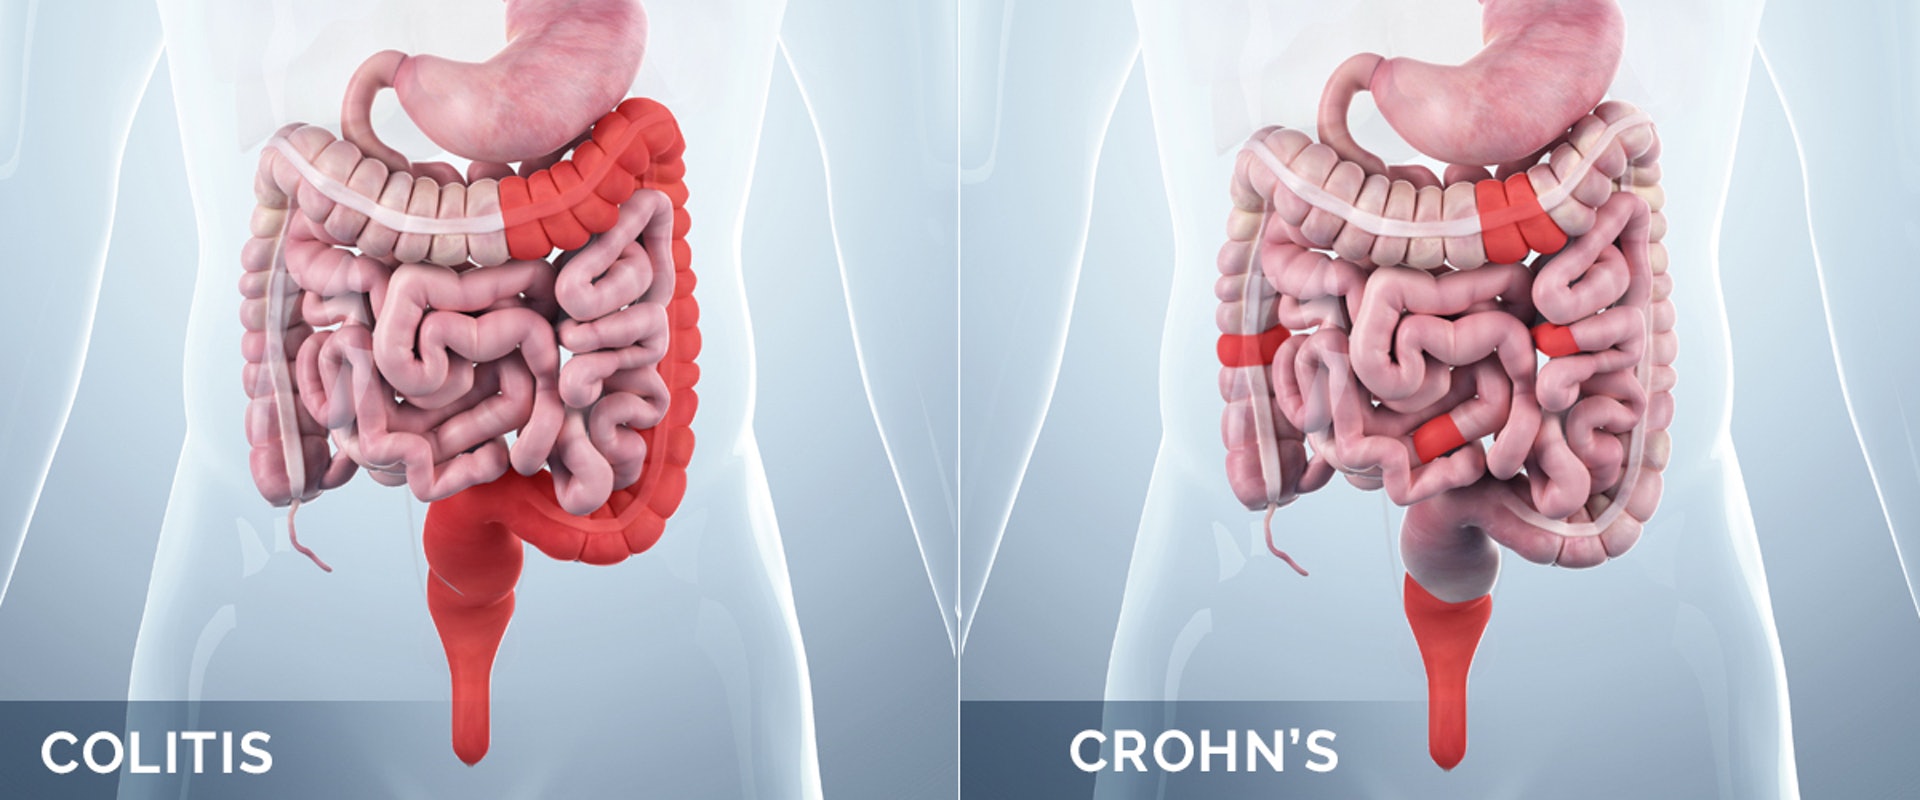 炎症性腸病可分為「潰瘍性結腸炎」和「克隆氏症」兩大類。前者（左圖）主要影響大腸黏膜；後者（右圖）除了會局部性影響大腸，亦有機會損害其他消化道器官組織。（圖片：healthmatters）